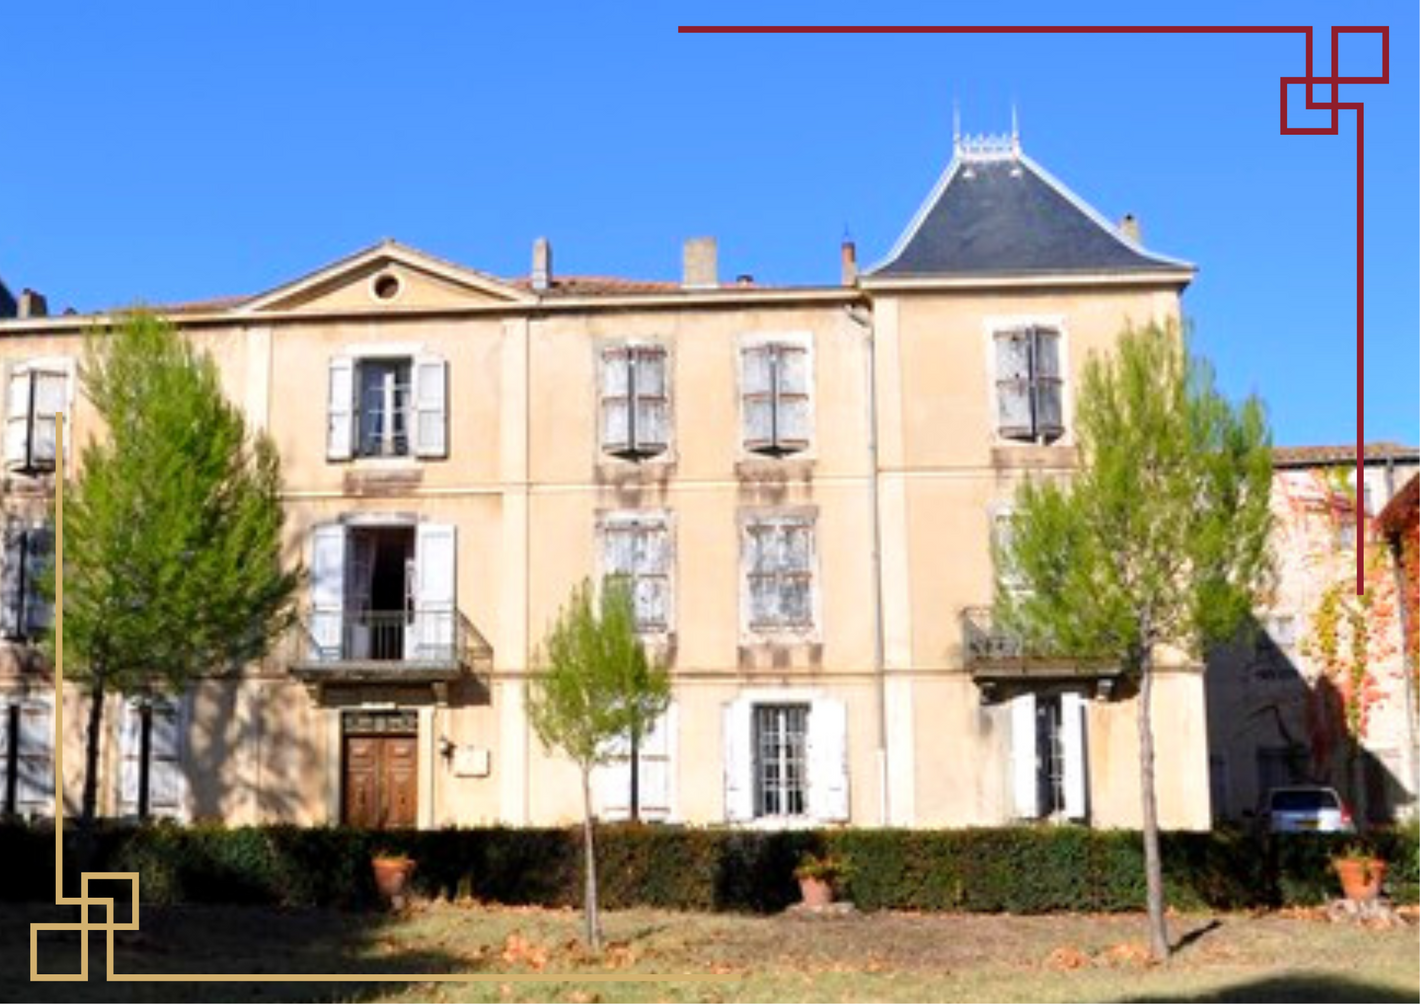 Château Massamier la Mignarde